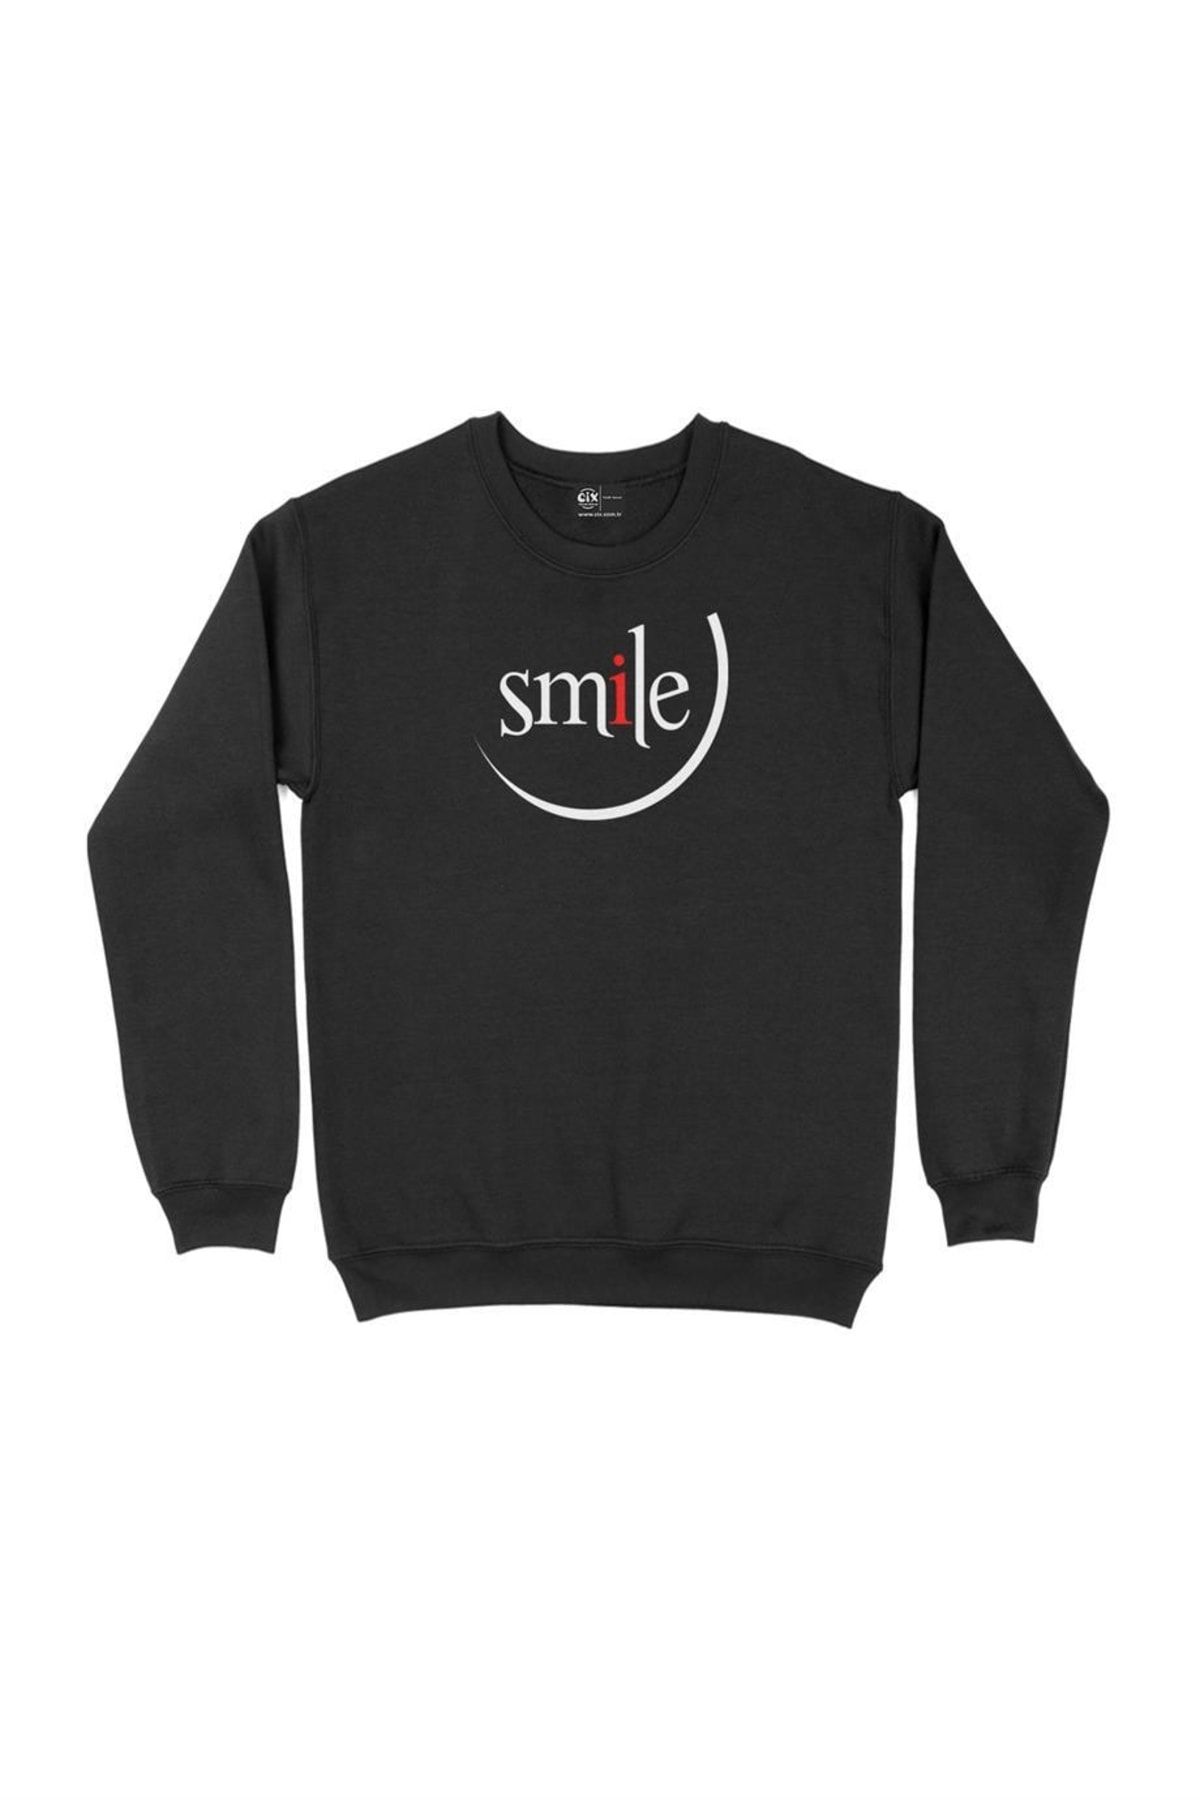 Cix Gülümse Smile Sweatshirt